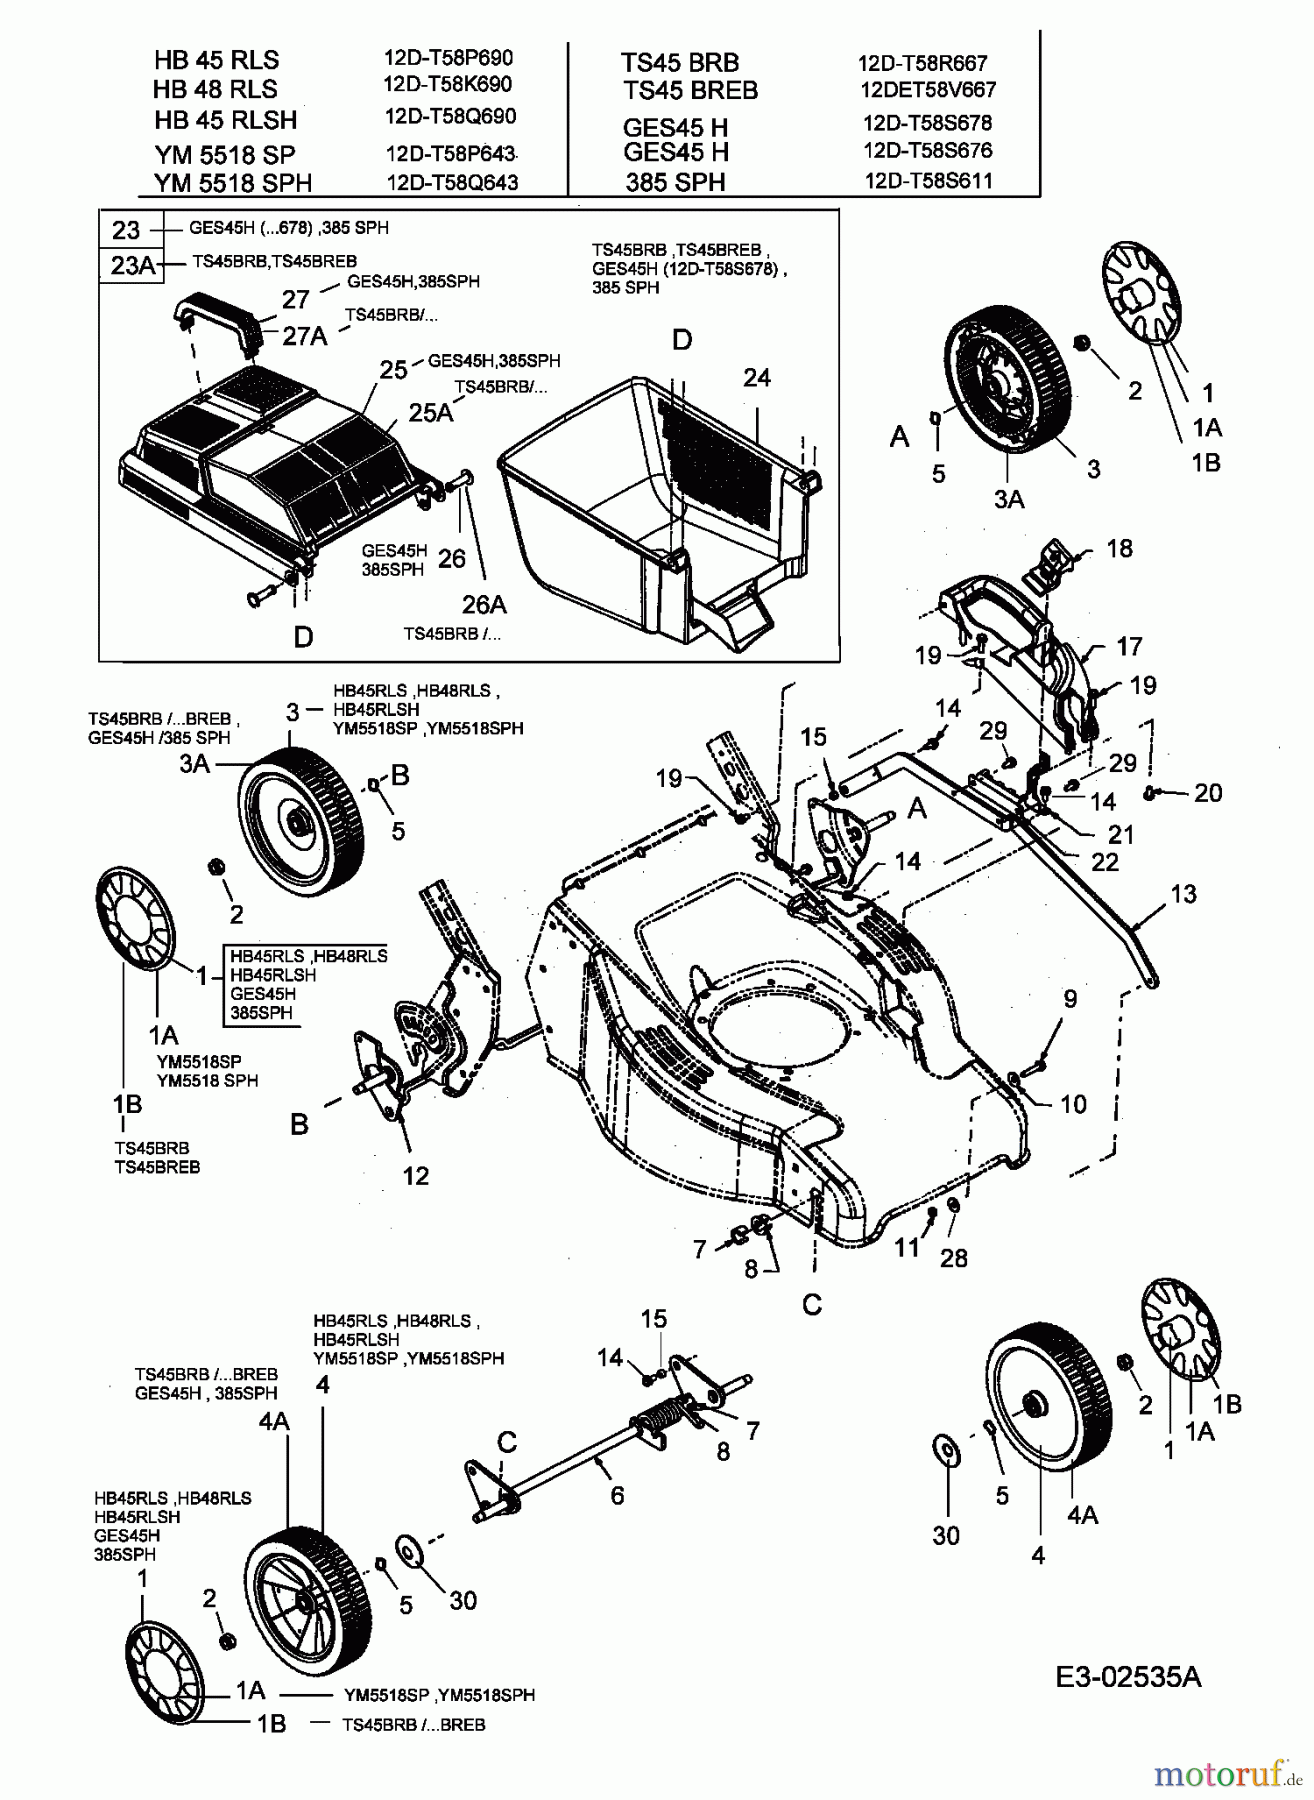  Turbo Silent Motormäher mit Antrieb TS 45 BR-B 12D-T58R667  (2005) Grasfangkorb, Räder, Schnitthöhenverstellung